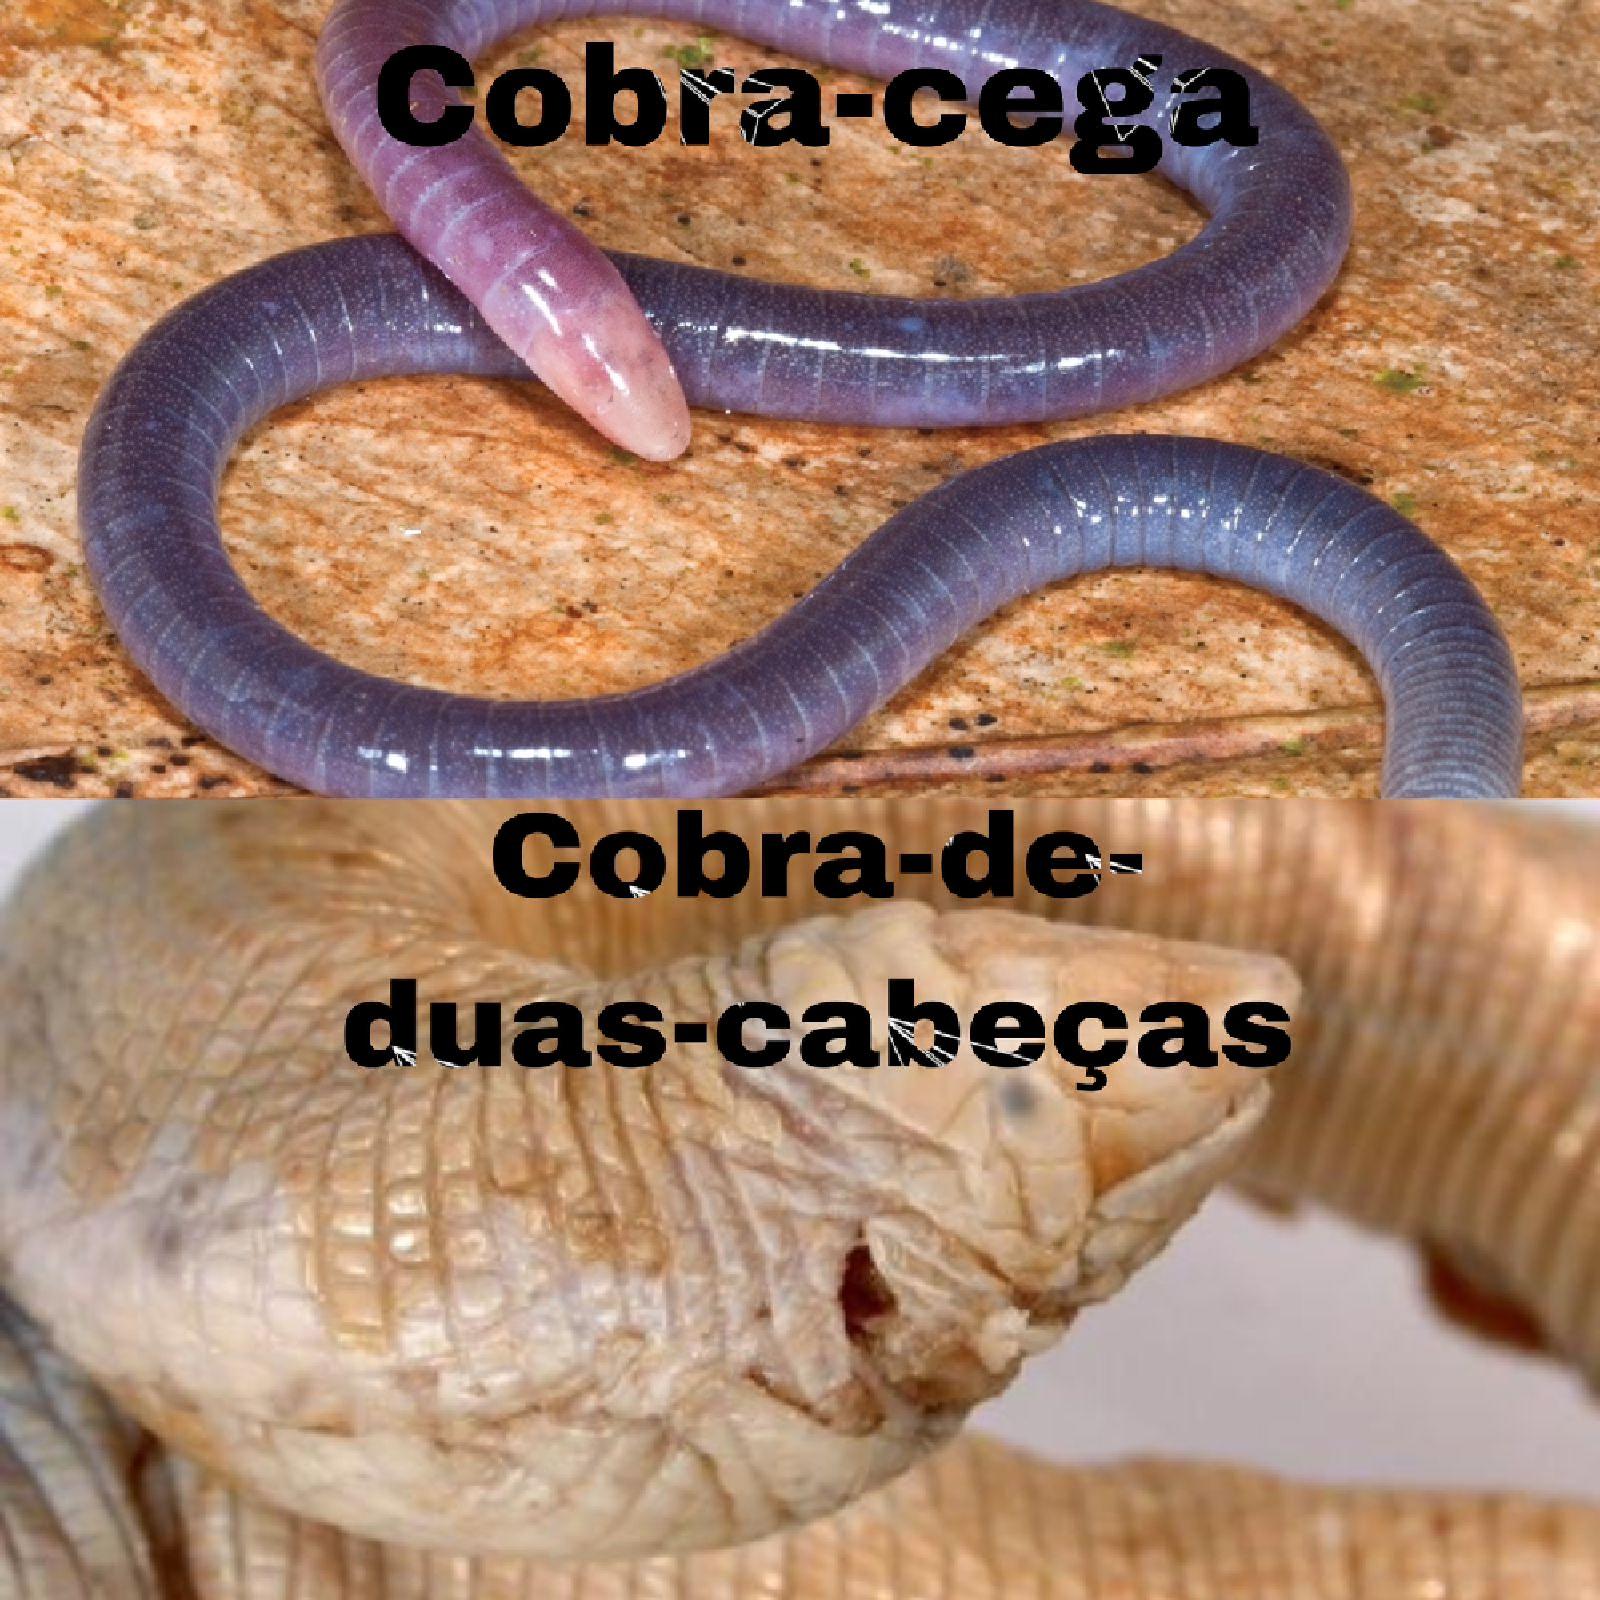 Cobra-cega: conheça tudo sobre ela